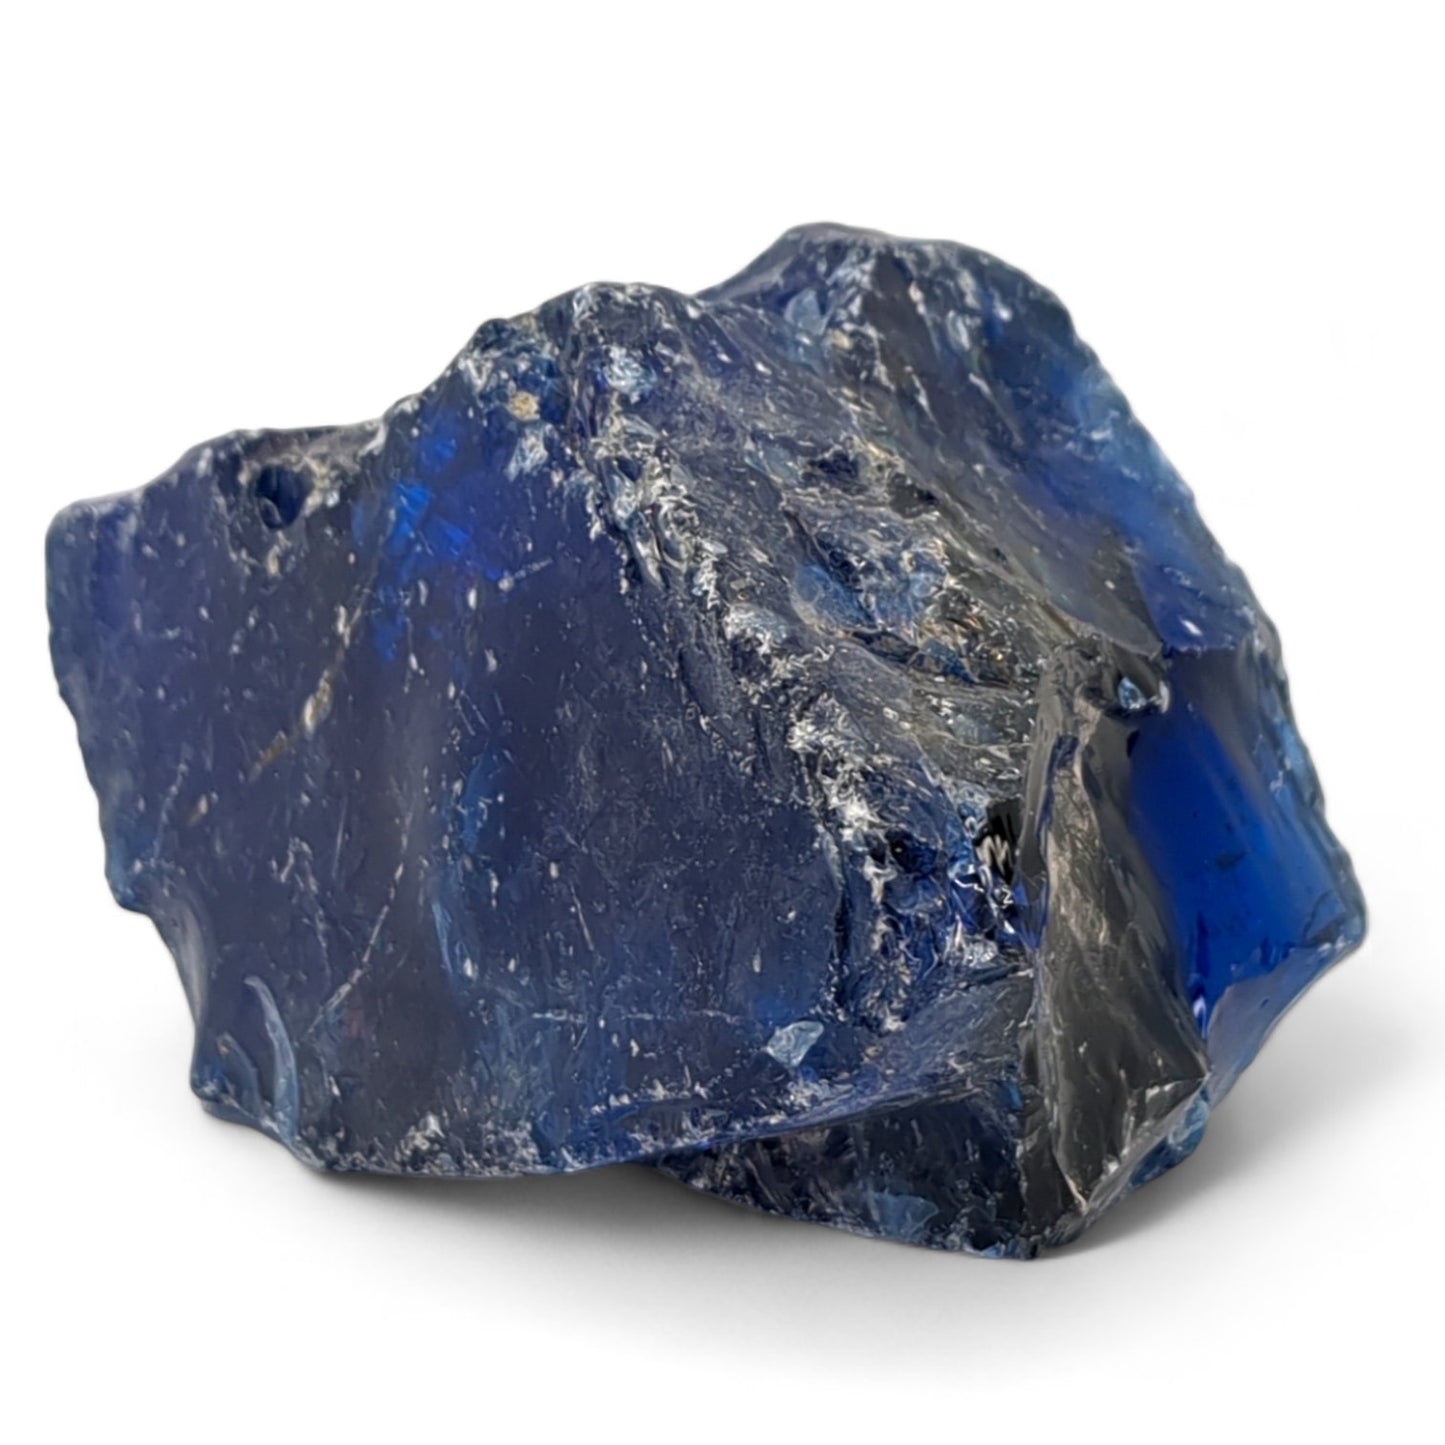 Cobalt Blue Art Glass Cullet Manganese Glowing Slag Garden Rock #4GX119